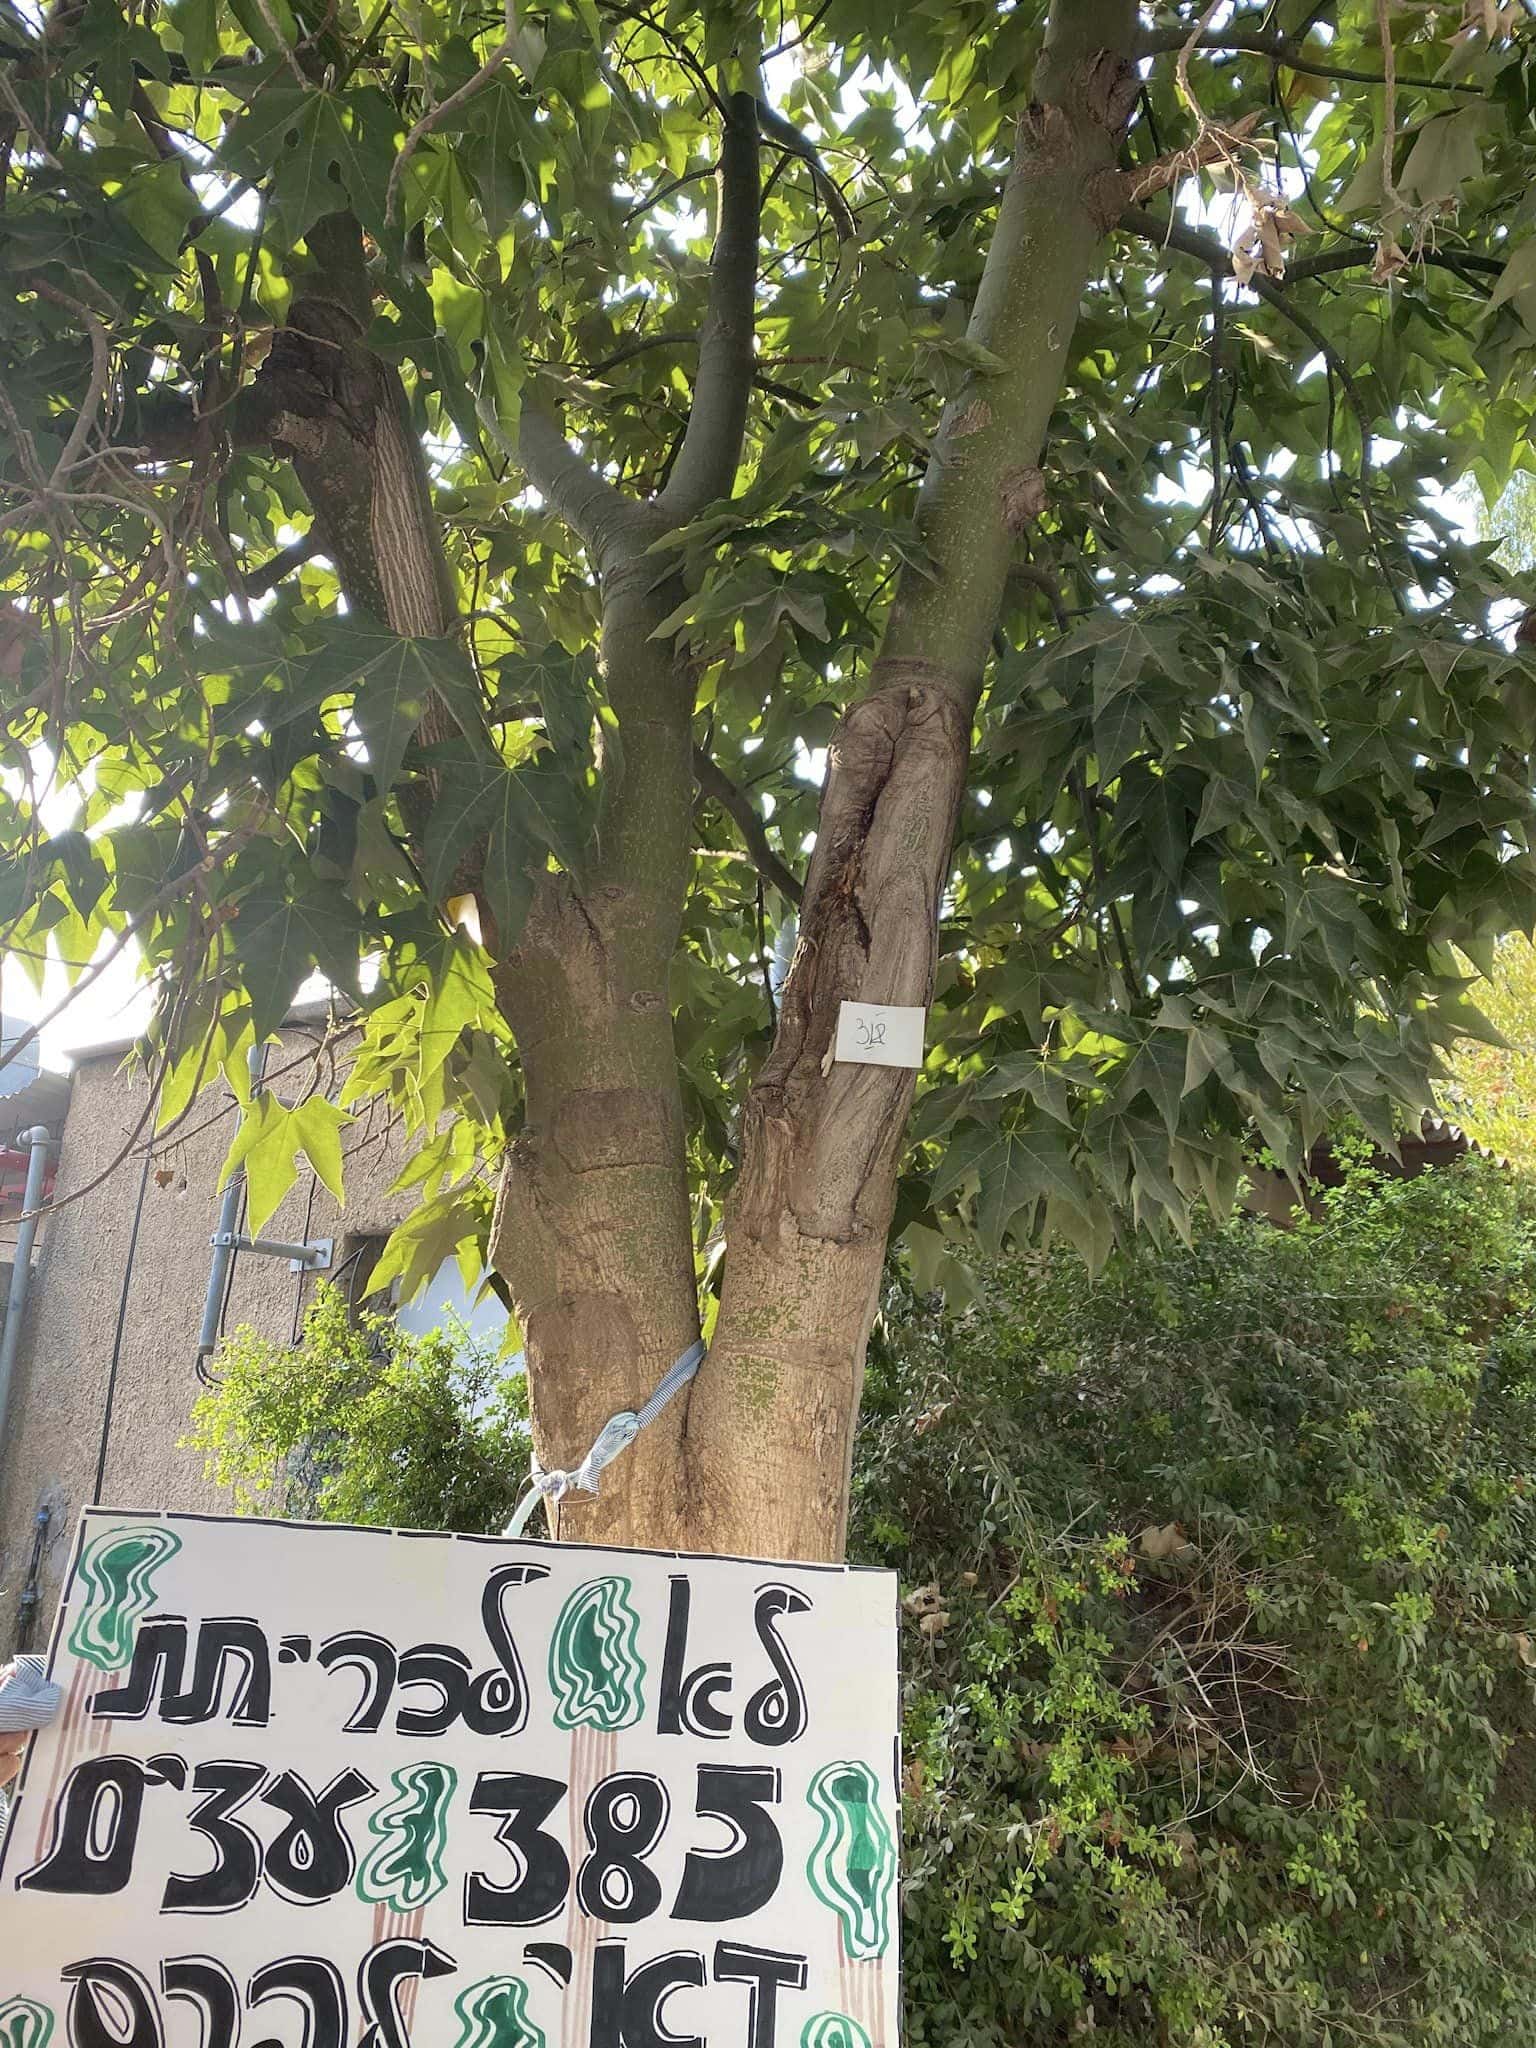 אחד העצים שיועד לכריתה בדרך רופין בתל אביב לטובת שביל אופניים (צילום: מתוך עמוד הפייסבוק של מאיה יעקובס)